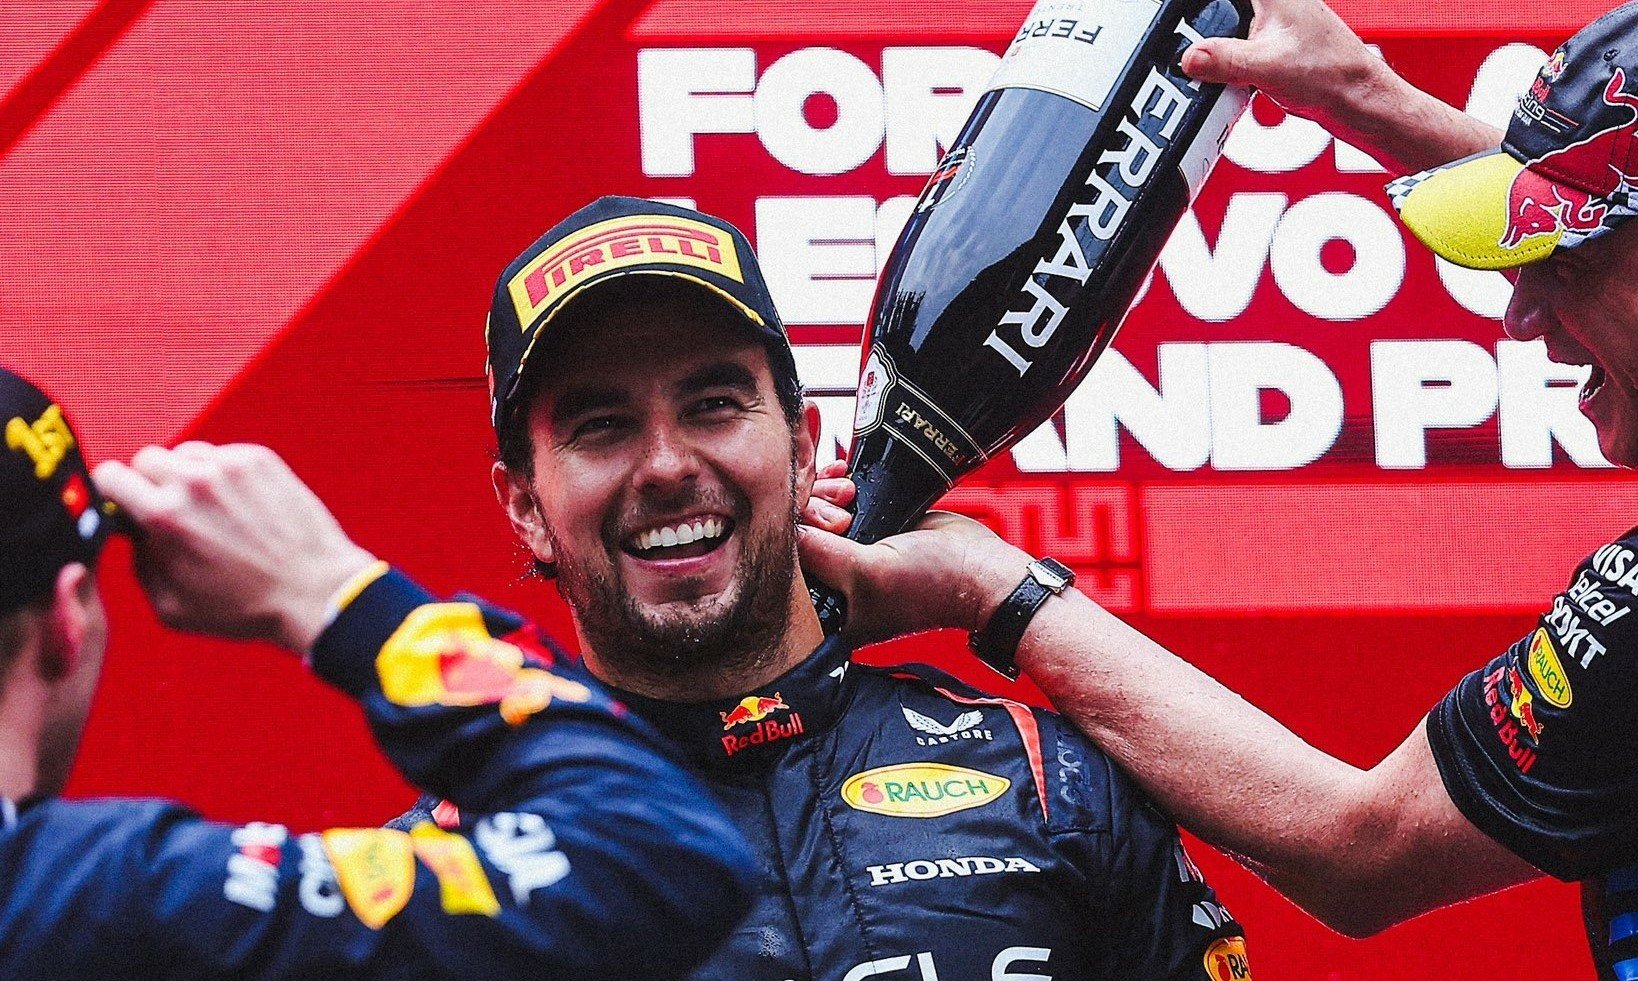 Ojciec Sergio Pereza: „Checo” jest dziś najbardziej poszukiwanym kierowcą w F1, ma więcej sponsorów niż Verstappen i Hamilton razem wzięci